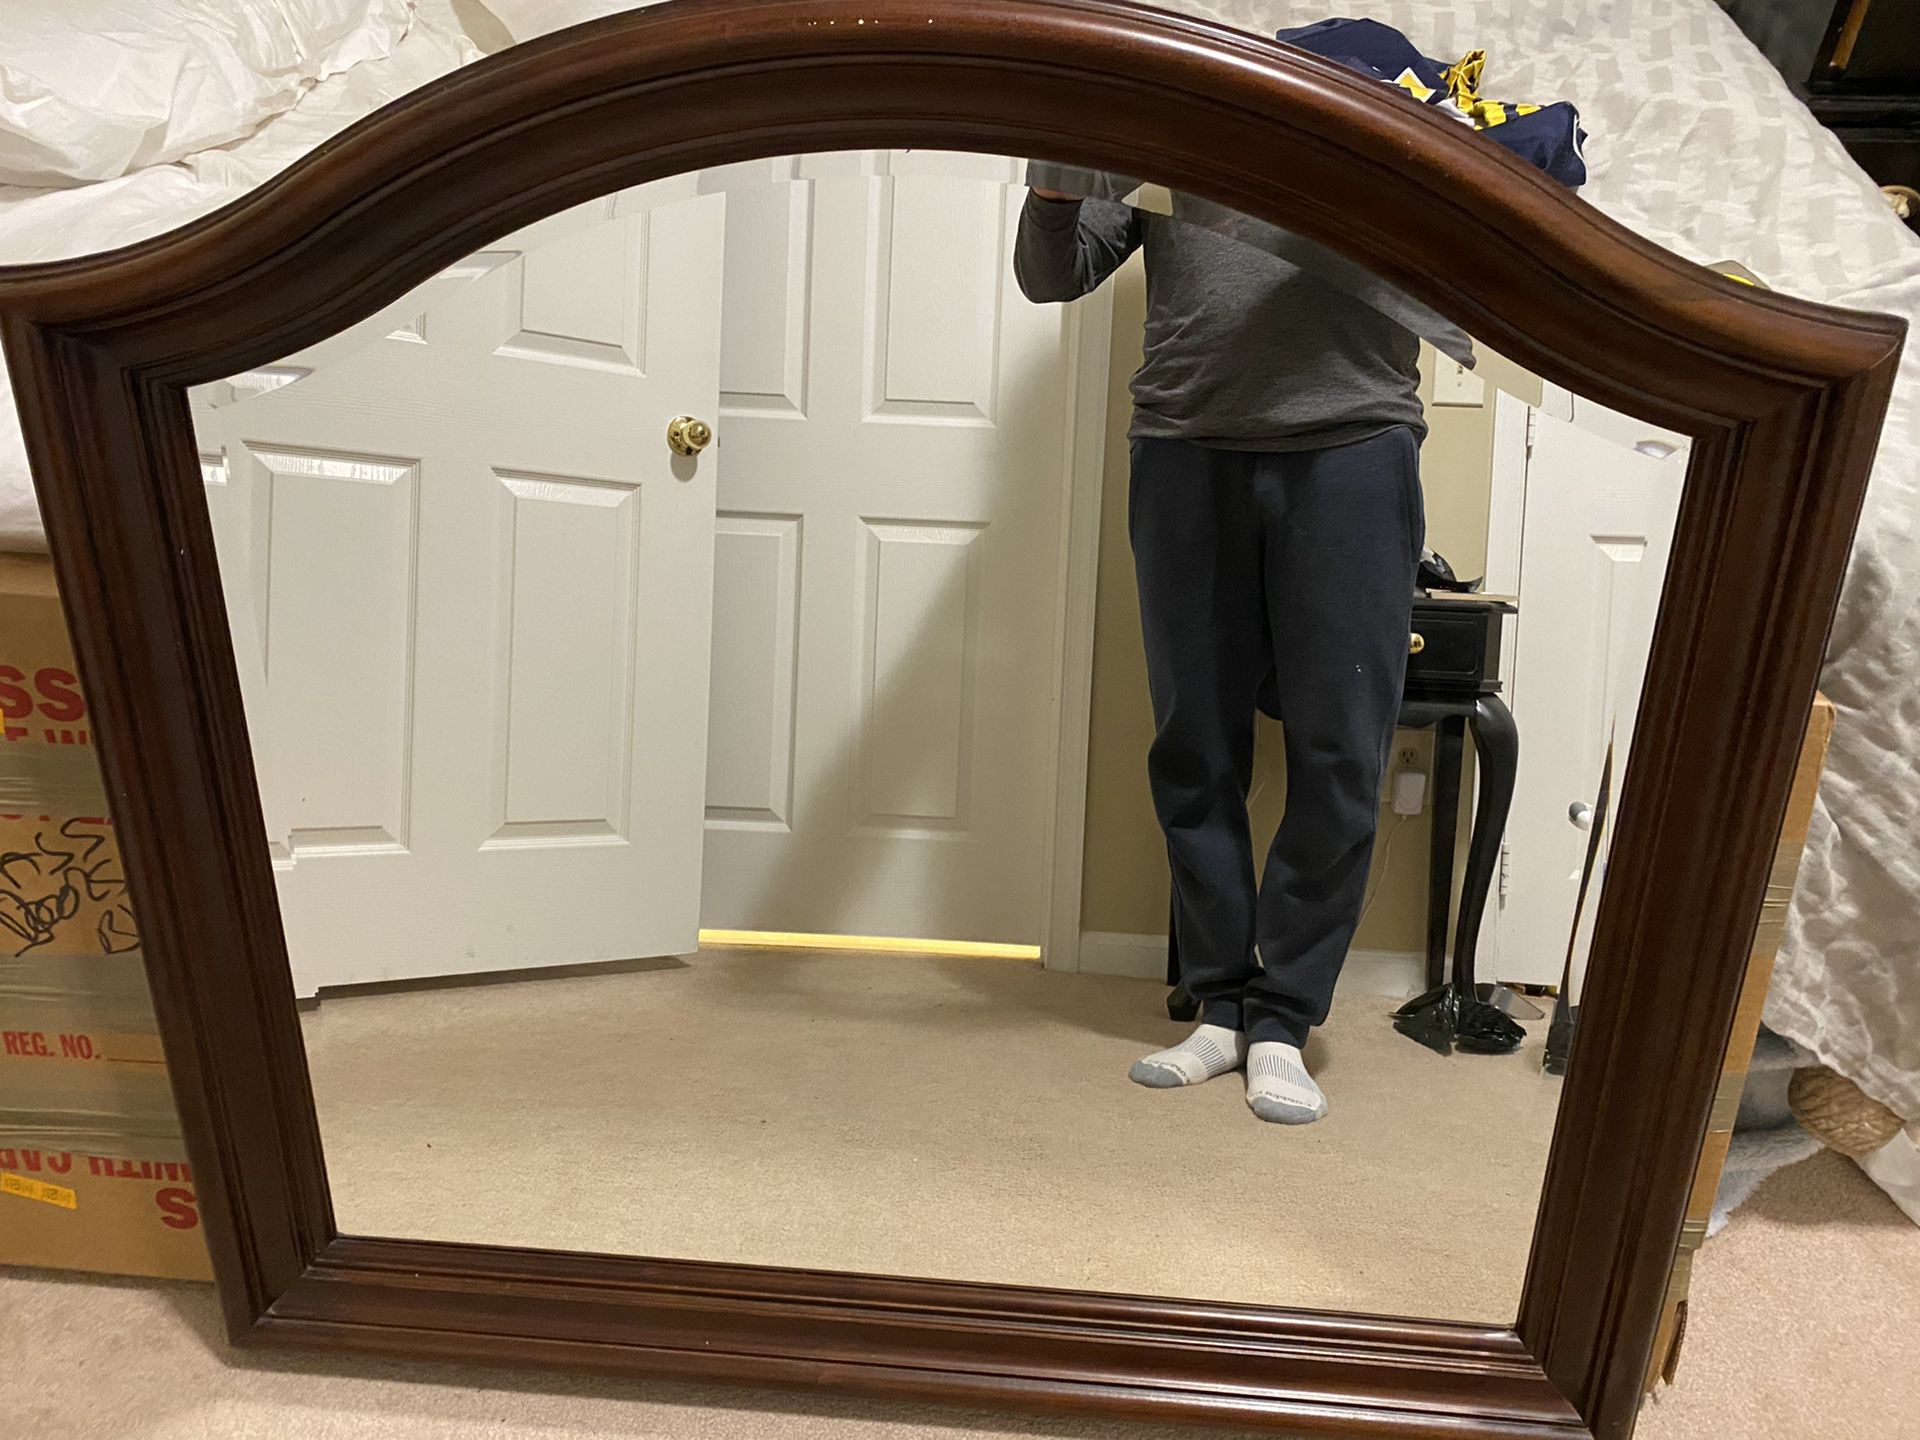 Bedroom mirror